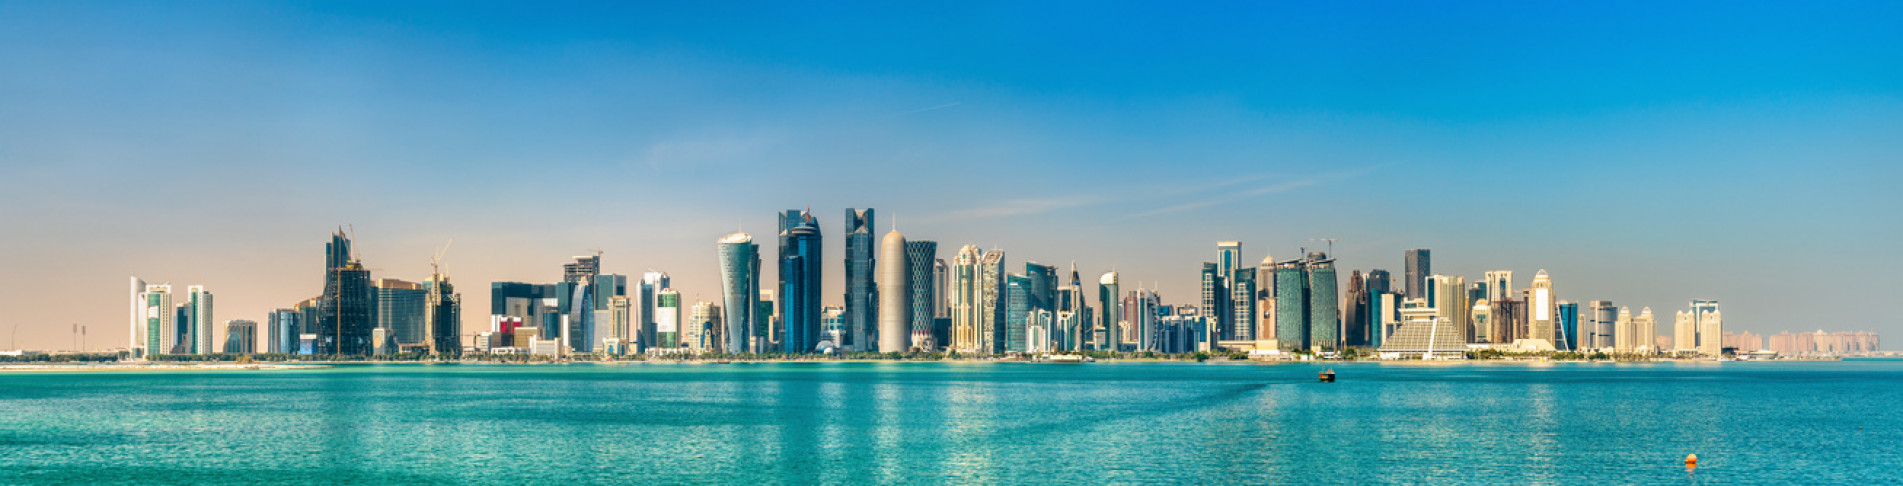 Skyline von Katar am Persischen Golf